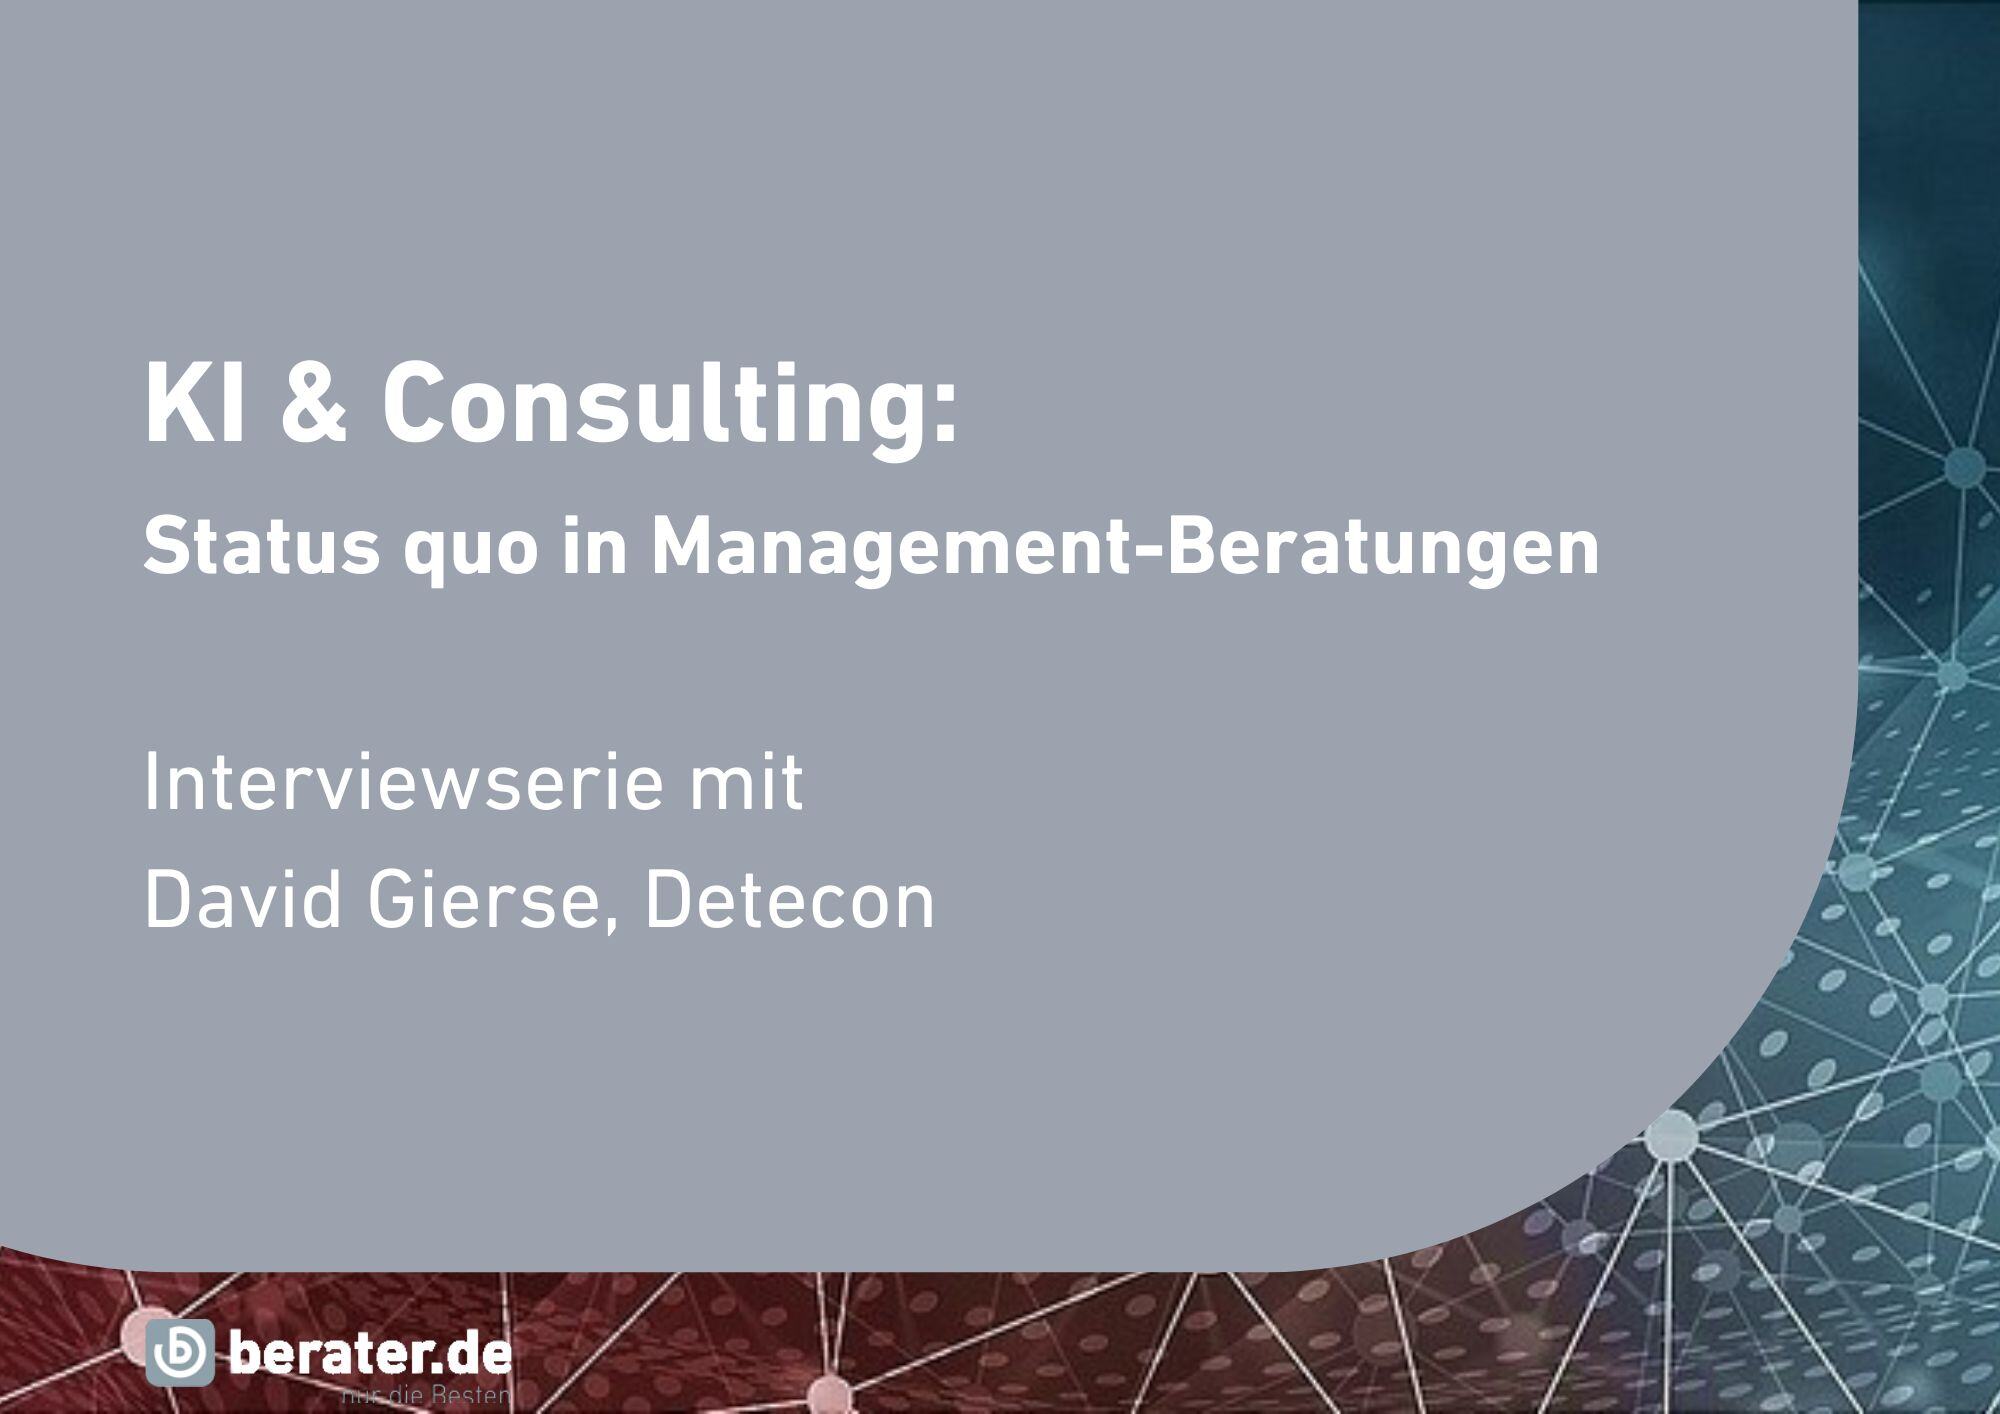 KI & Consulting: Status quo in Management-Beratungen